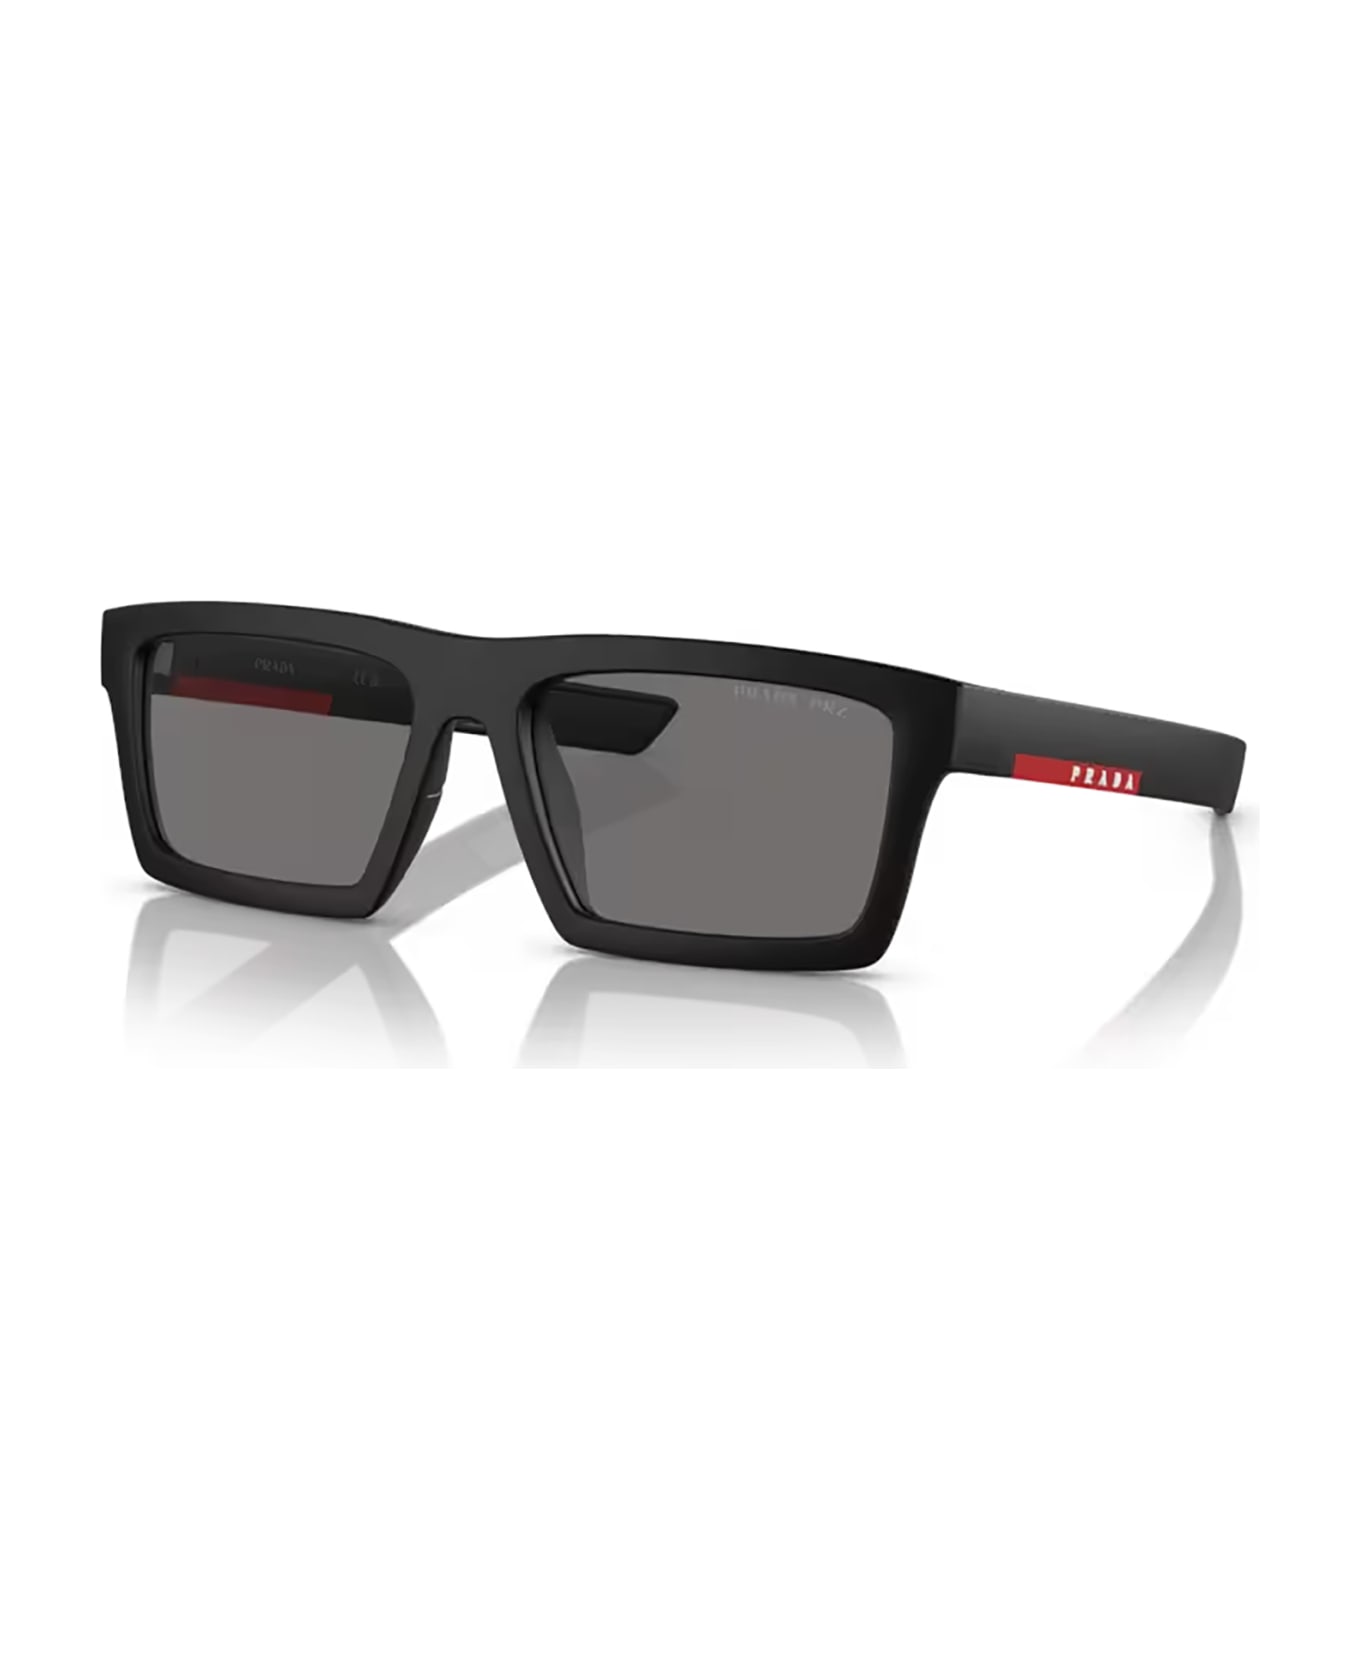 Prada Linea Rossa Ps 02zsu Matte Black Sunglasses - Matte Black